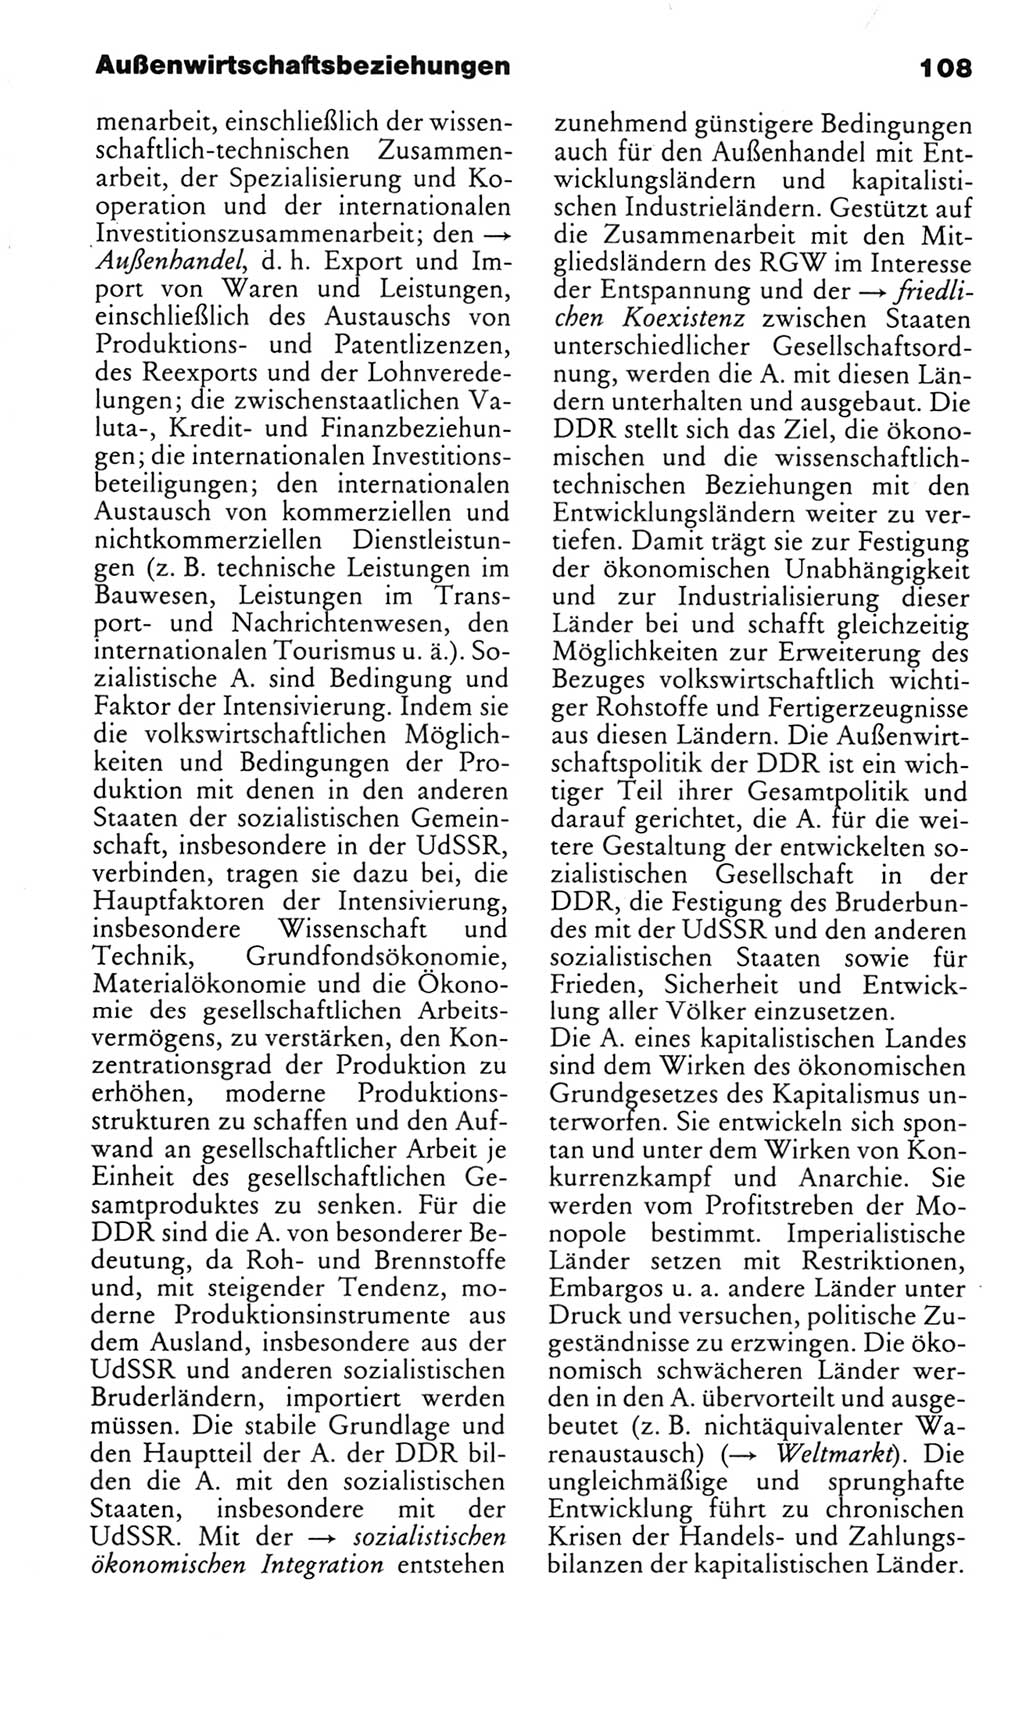 Kleines politisches Wörterbuch [Deutsche Demokratische Republik (DDR)] 1985, Seite 108 (Kl. pol. Wb. DDR 1985, S. 108)